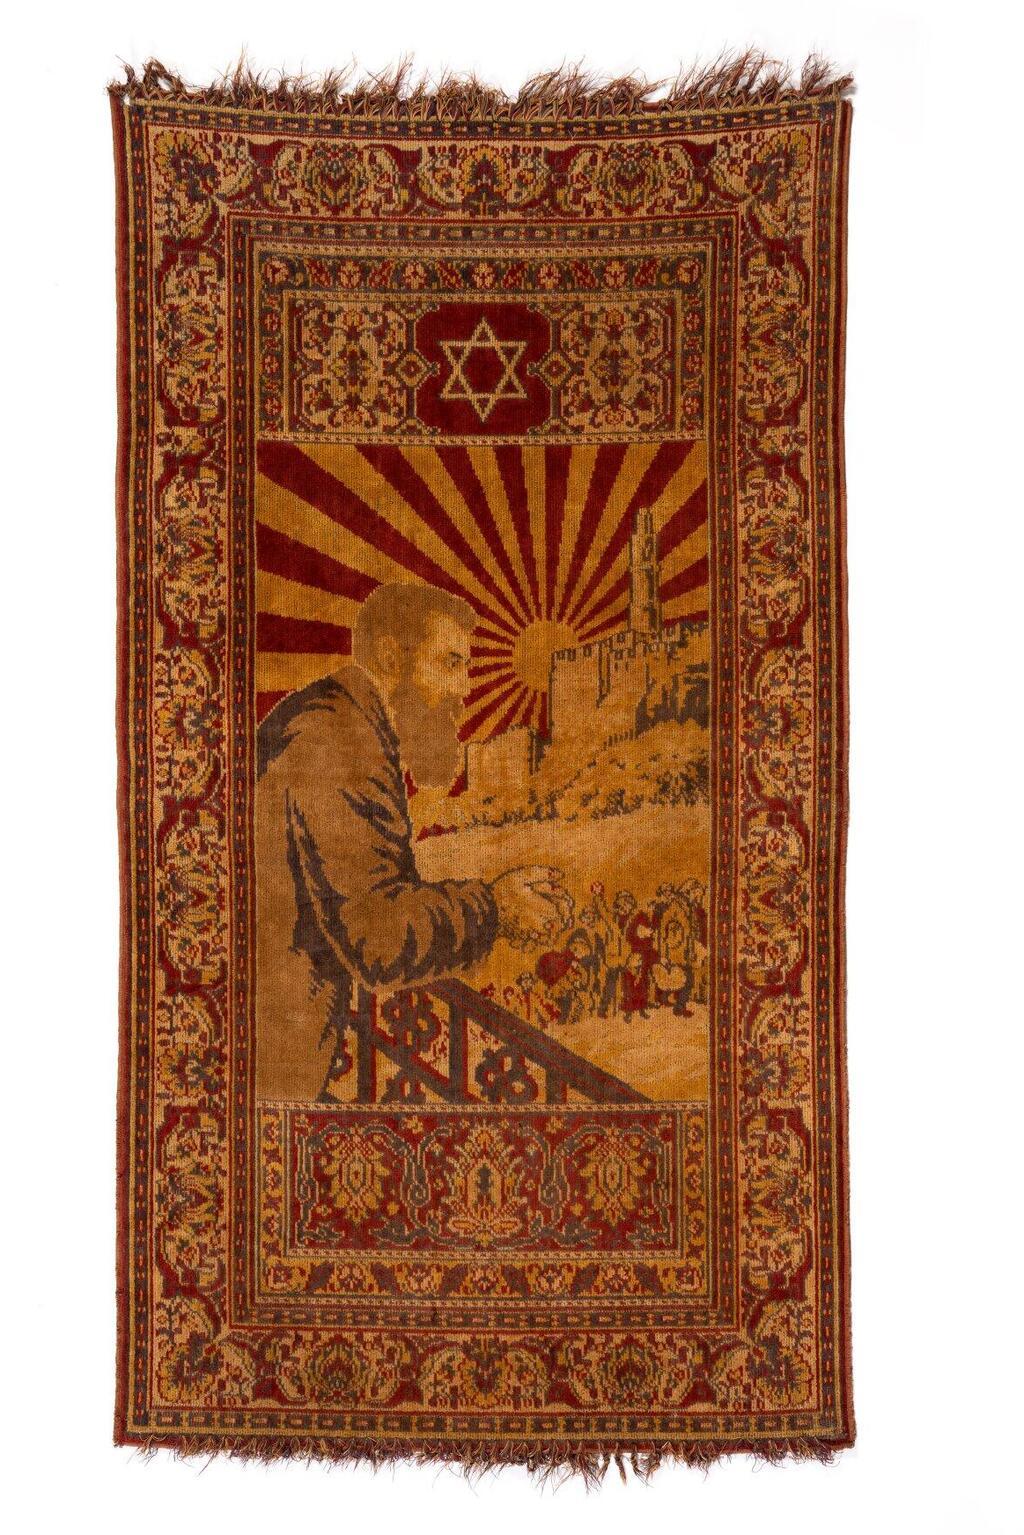 שטיח קיר עם דיוקן הרצל, 1920 בקירוב. אוסף בית מורשת יהודי עדן, באדיבות דני גולדשמיד.